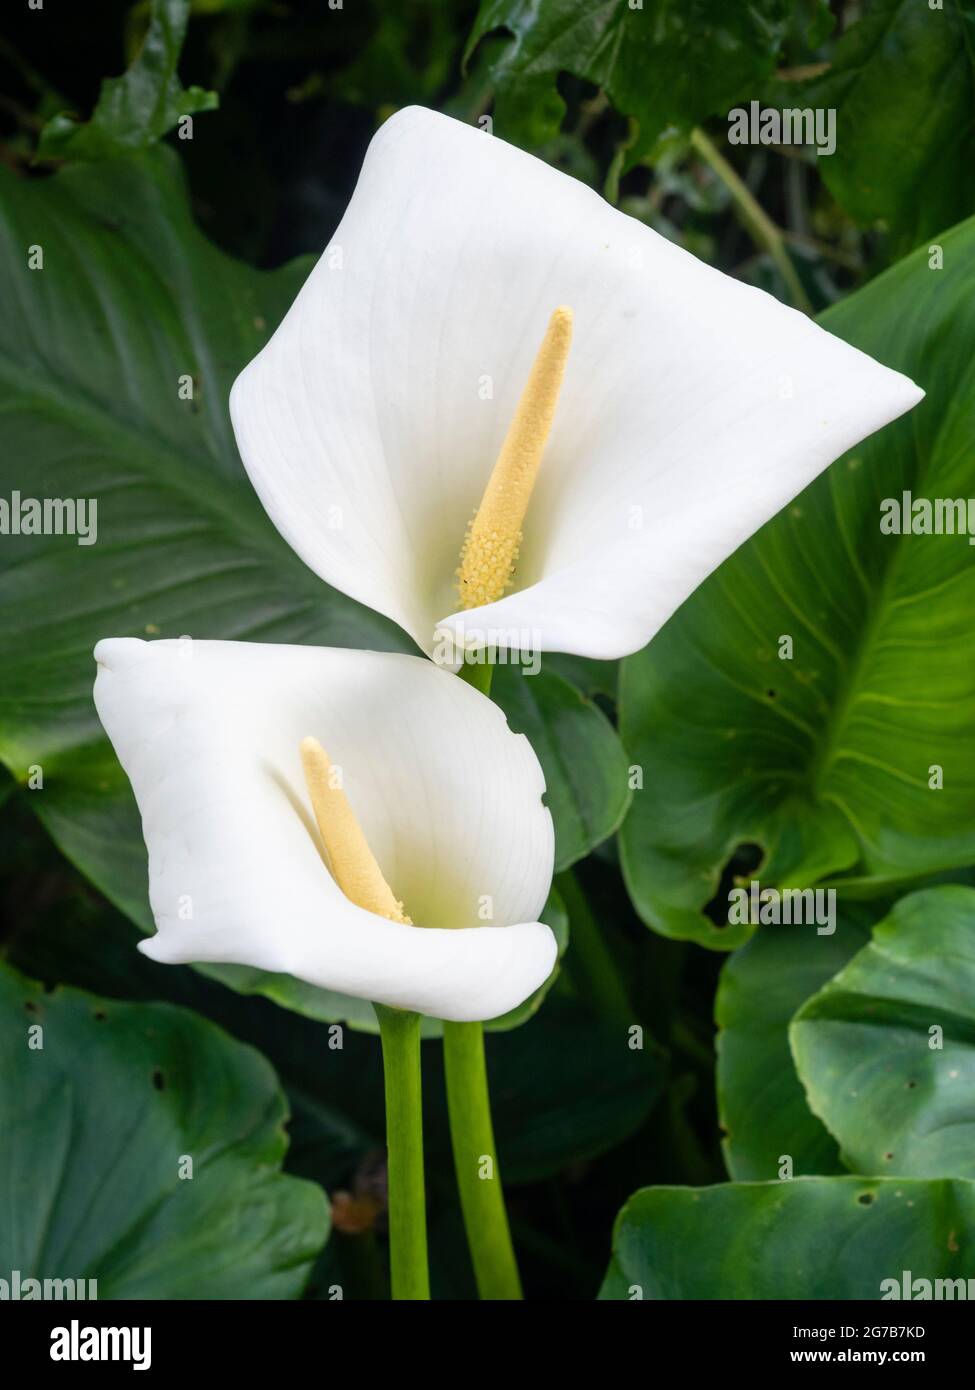 Weiße Spathe und gelbe Spadix der widerstandsreichsten der weiß blühenden Calla-Lilien, Zantedeschia aethiopica 'Crowborough' Stockfoto